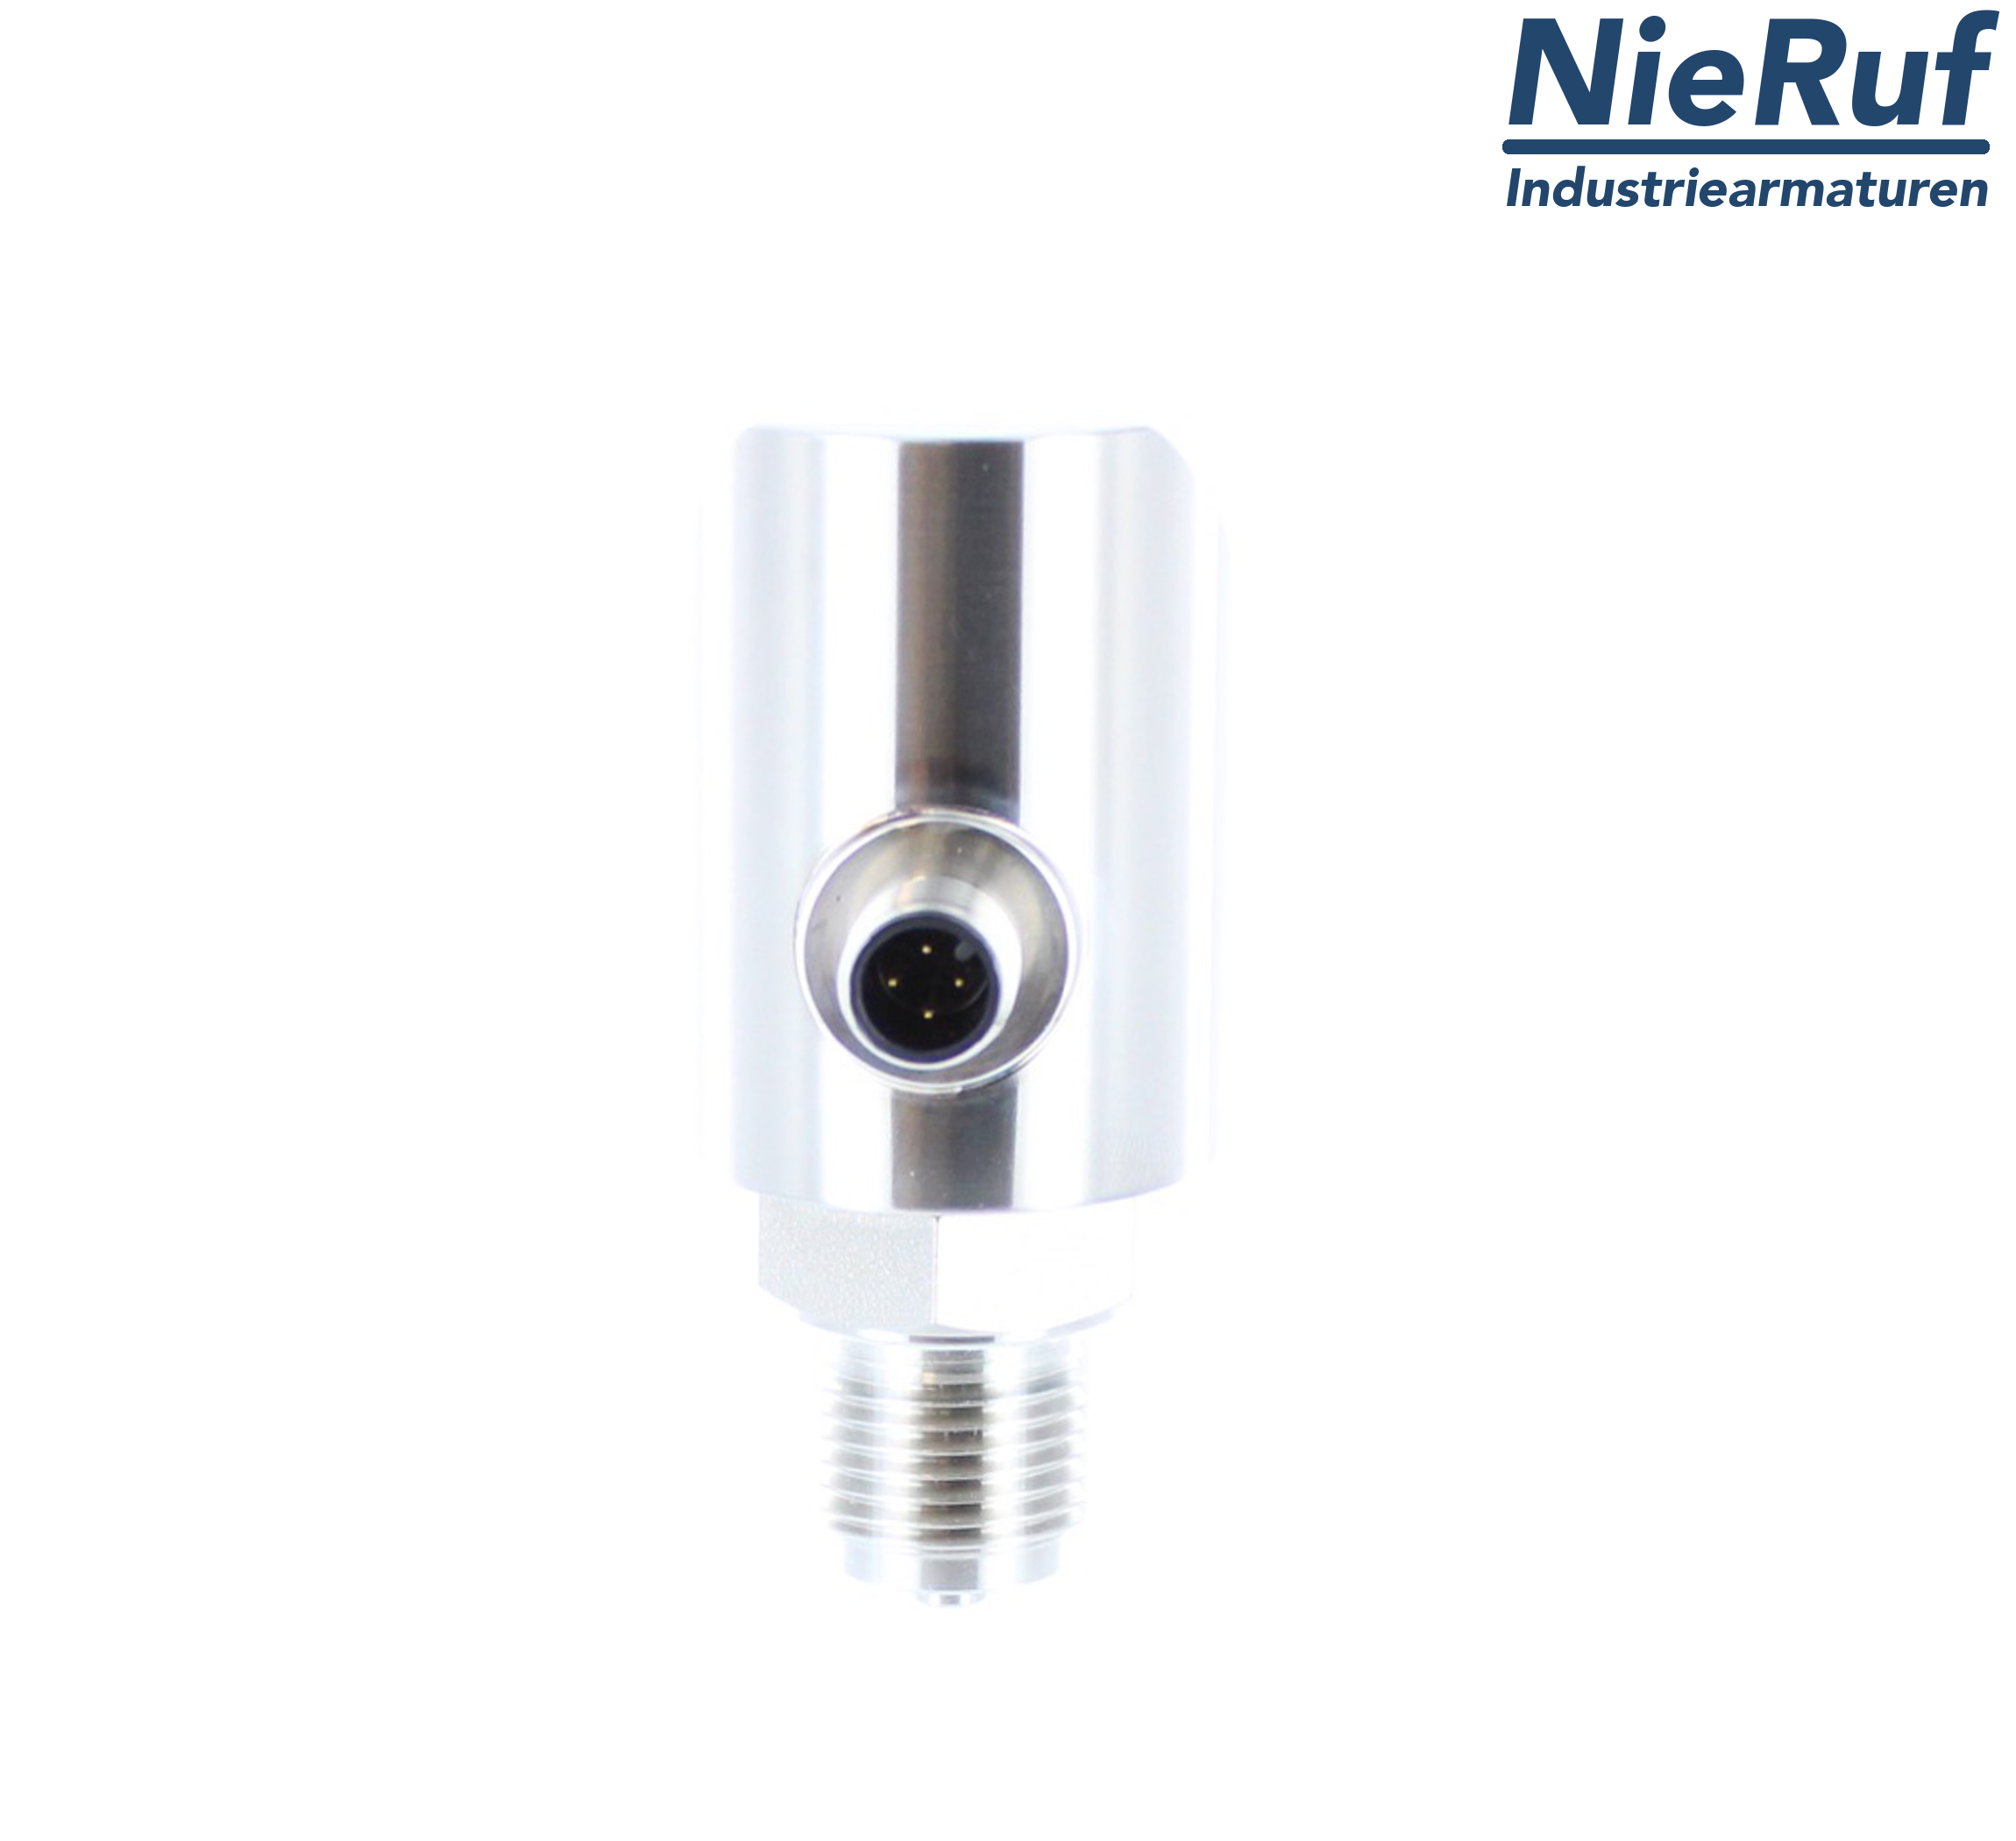 digital pressure sensor G 1/4" B 5-wire: 2xPNP, 1x4 - 20mA FPM 0,0 - 6,0 bar